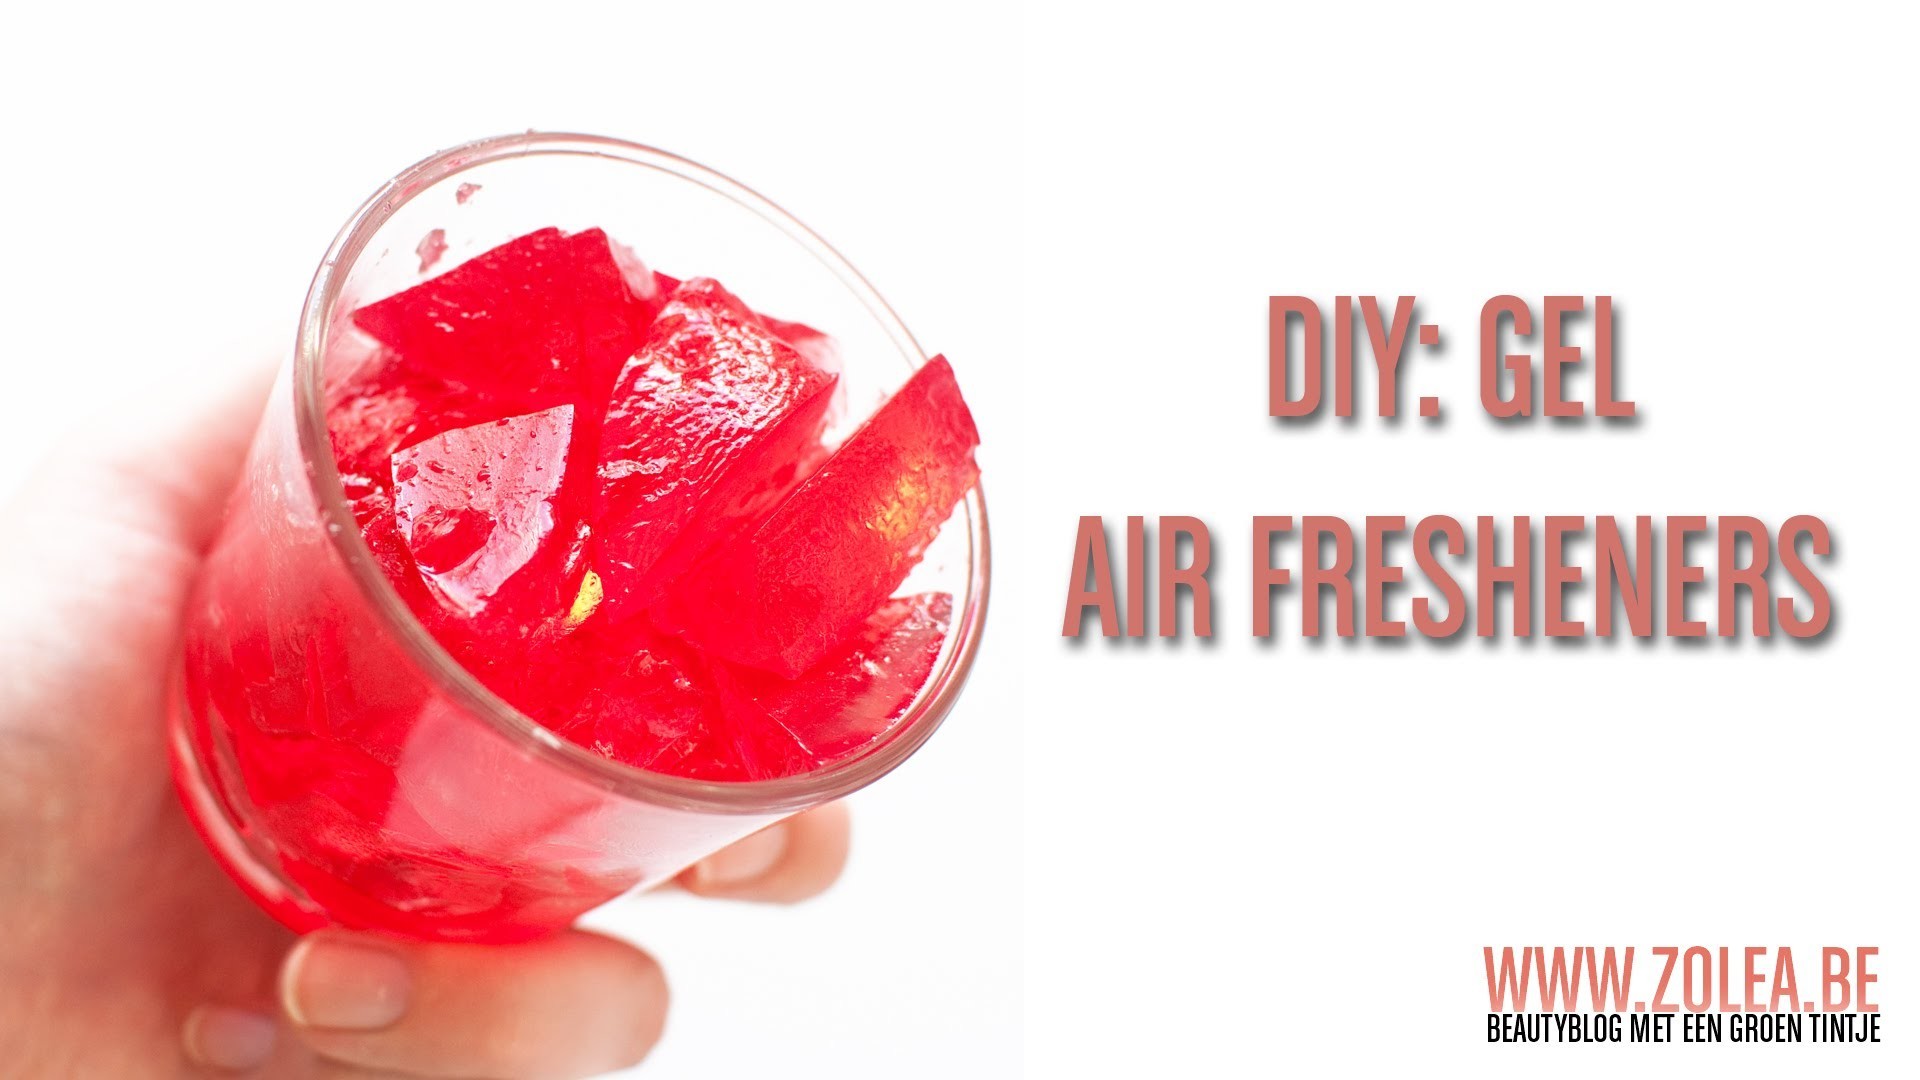 DIY gel air fresheners